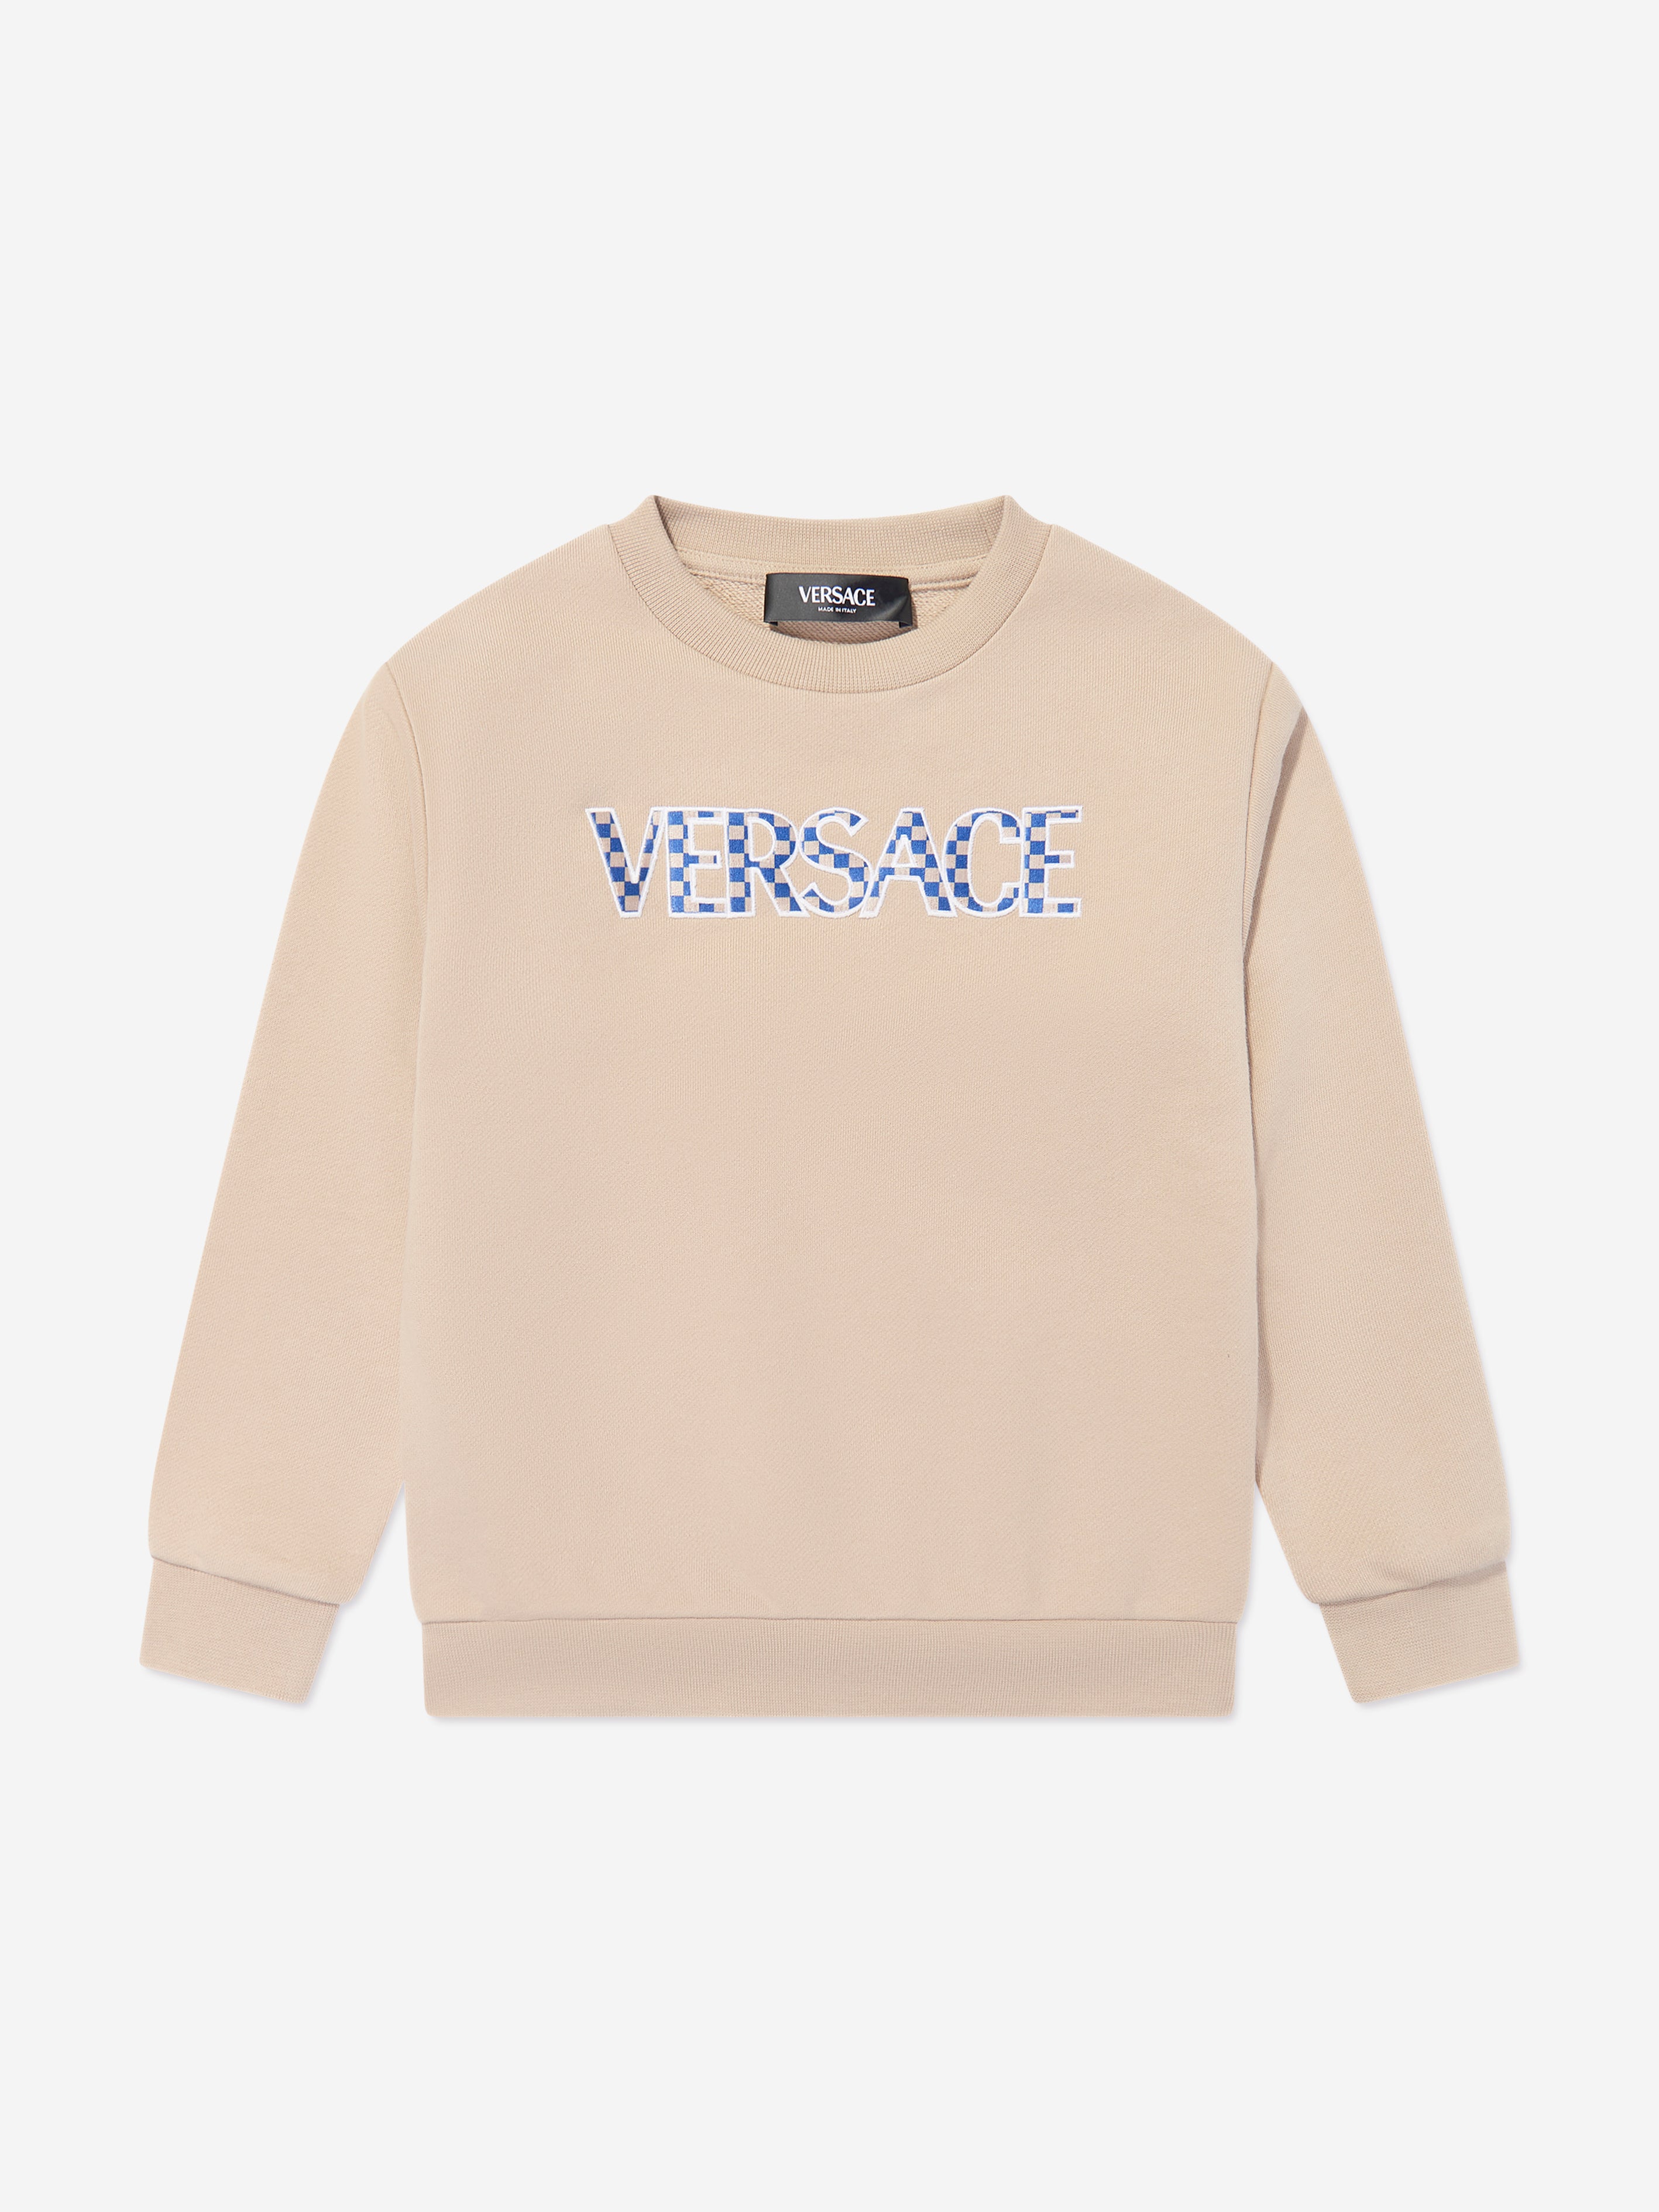 Versace Babies' Boys Damier Logo Sweatshirt In Beige